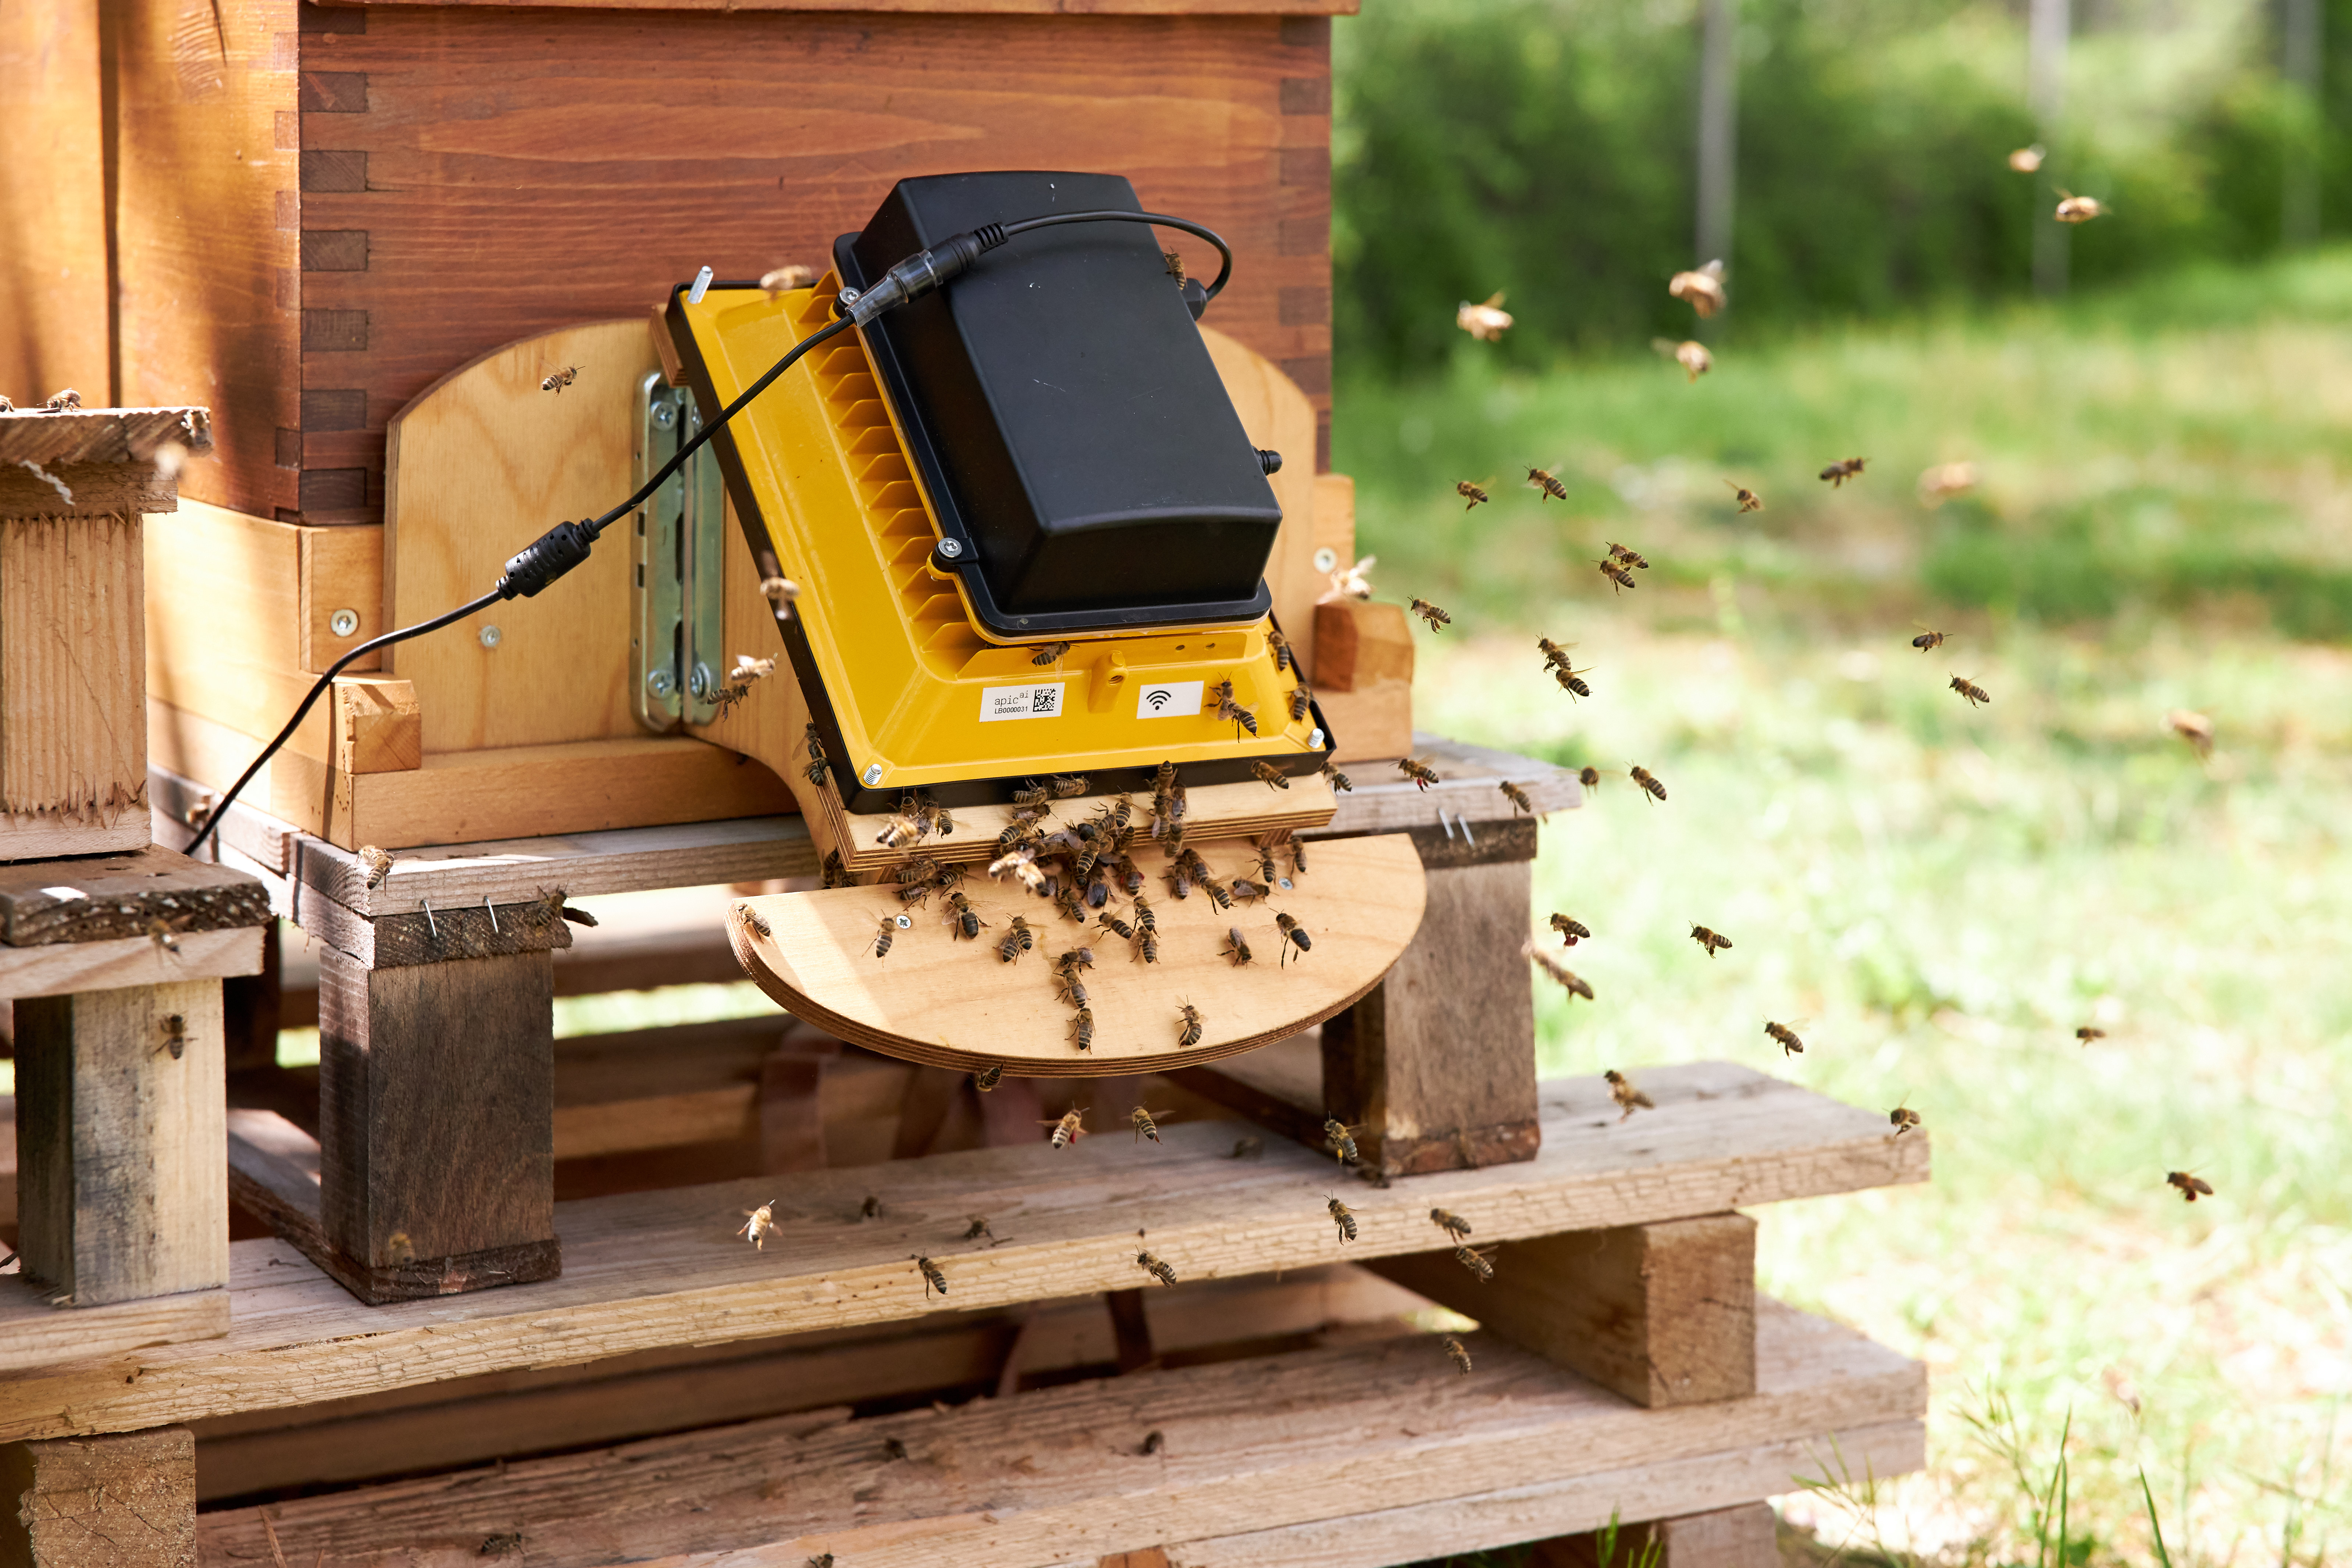 Bienen als Biosensoren: Die Bienen werden beim Betreten und Verlassen des Bienenstocks mit einer Kamera erfasst.